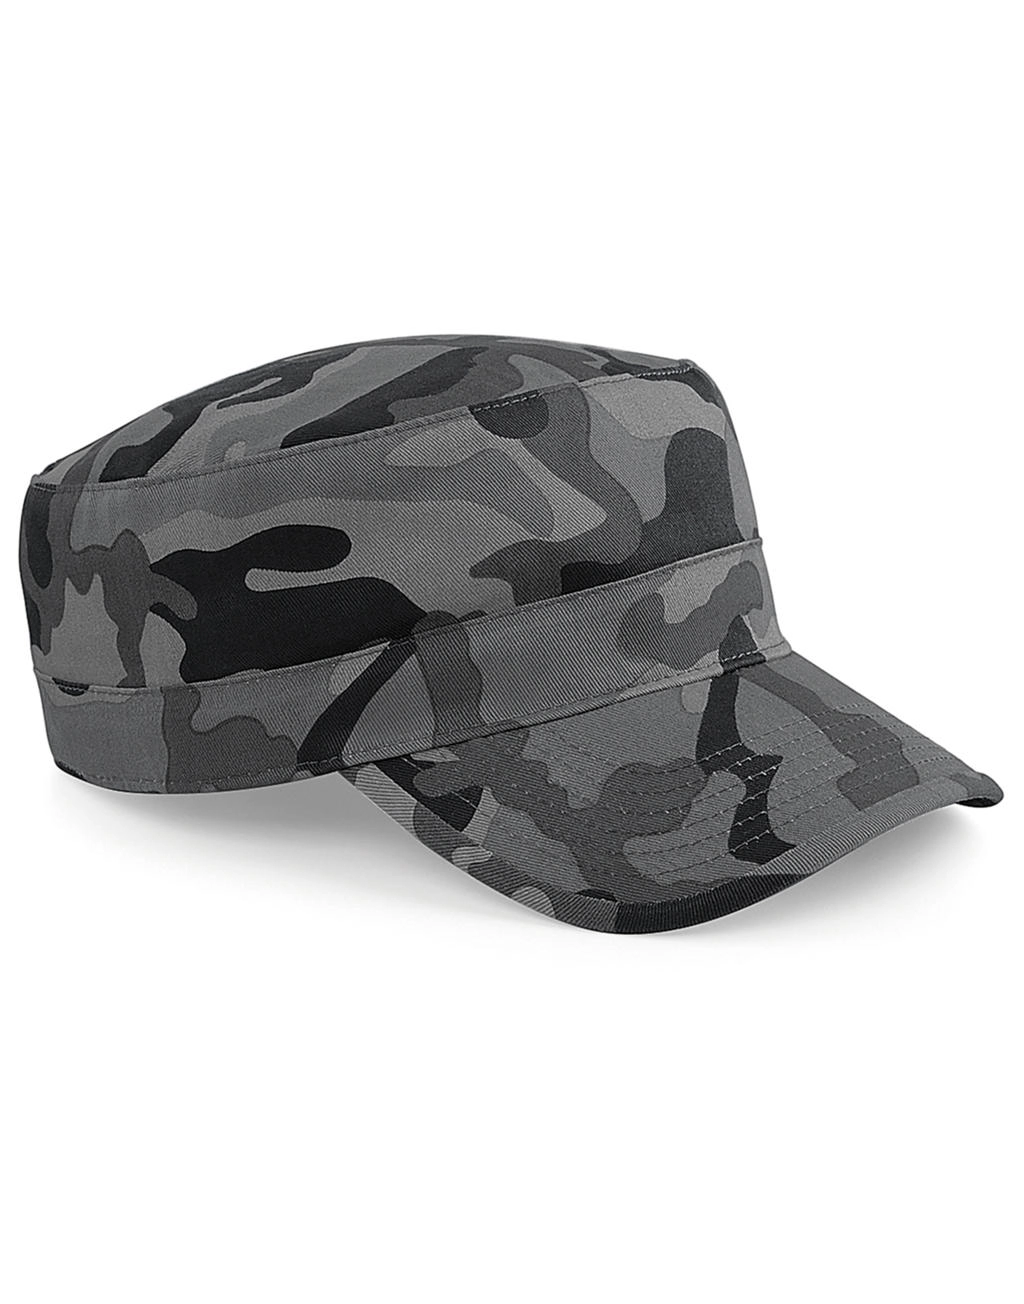 Camouflage Army Cap zum Besticken und Bedrucken mit Ihren Logo, Schriftzug oder Motiv.